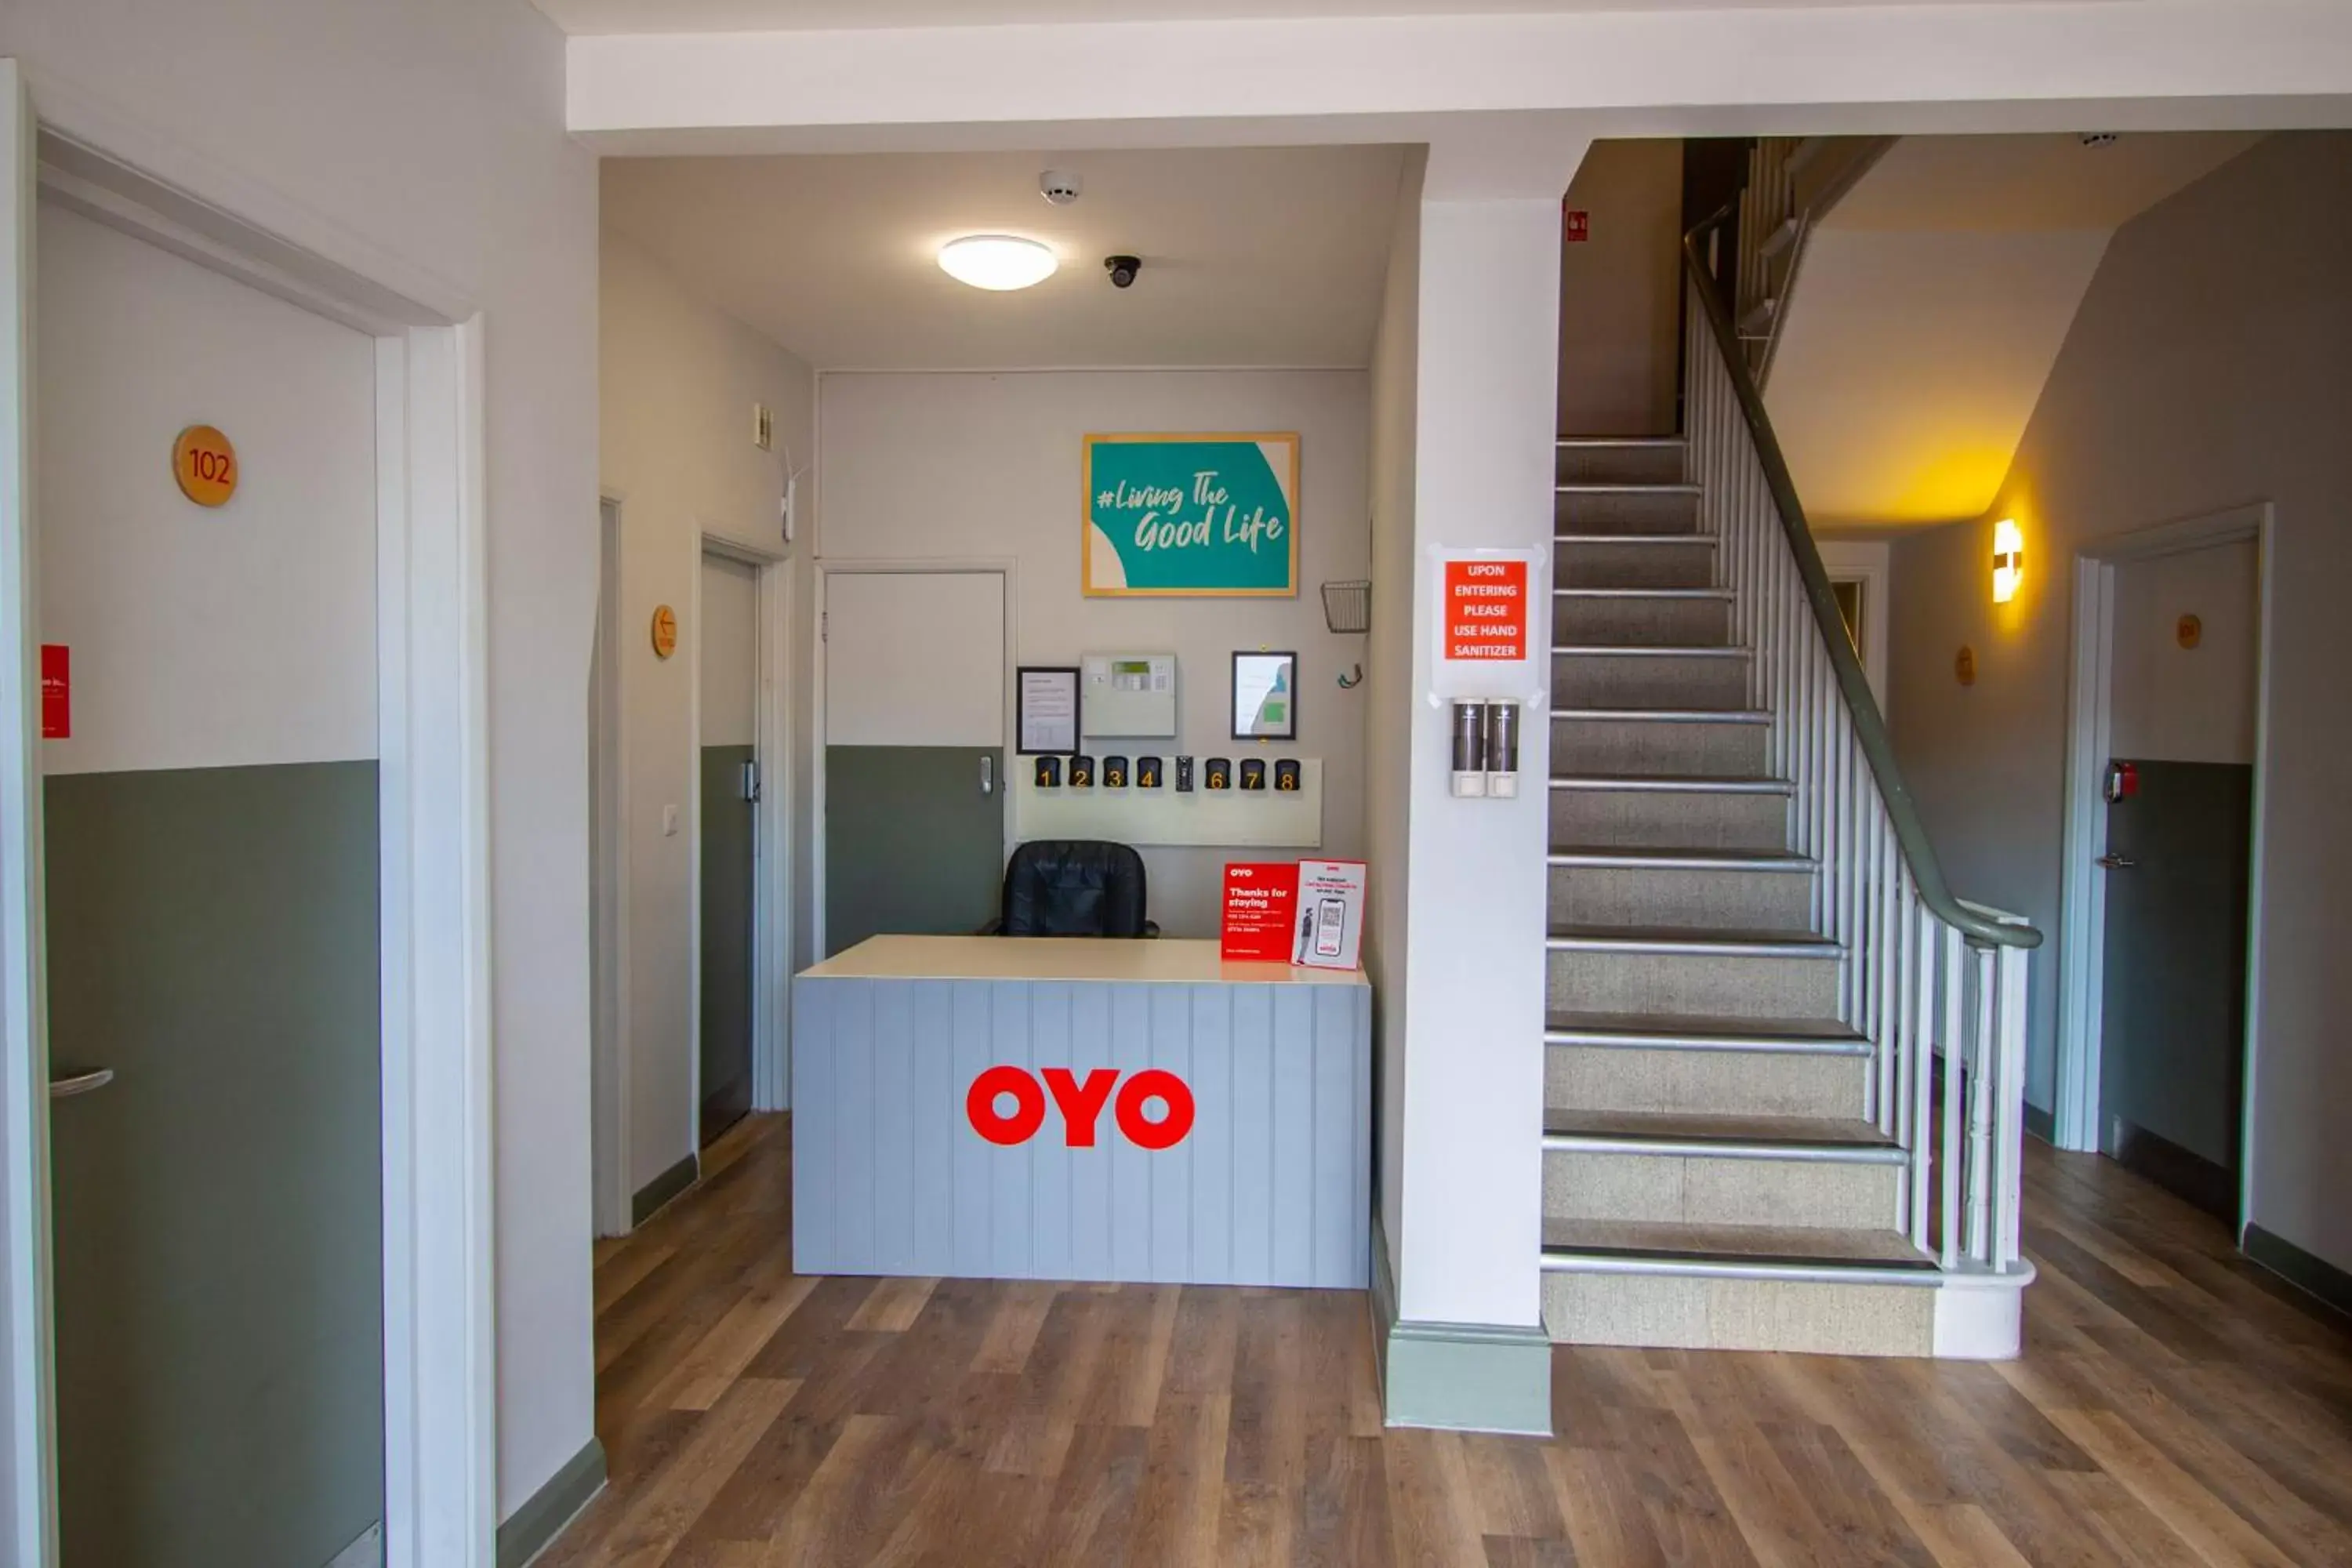 Lobby or reception, Lobby/Reception in OYO Studiotel GY - Modern Hotel Apartments